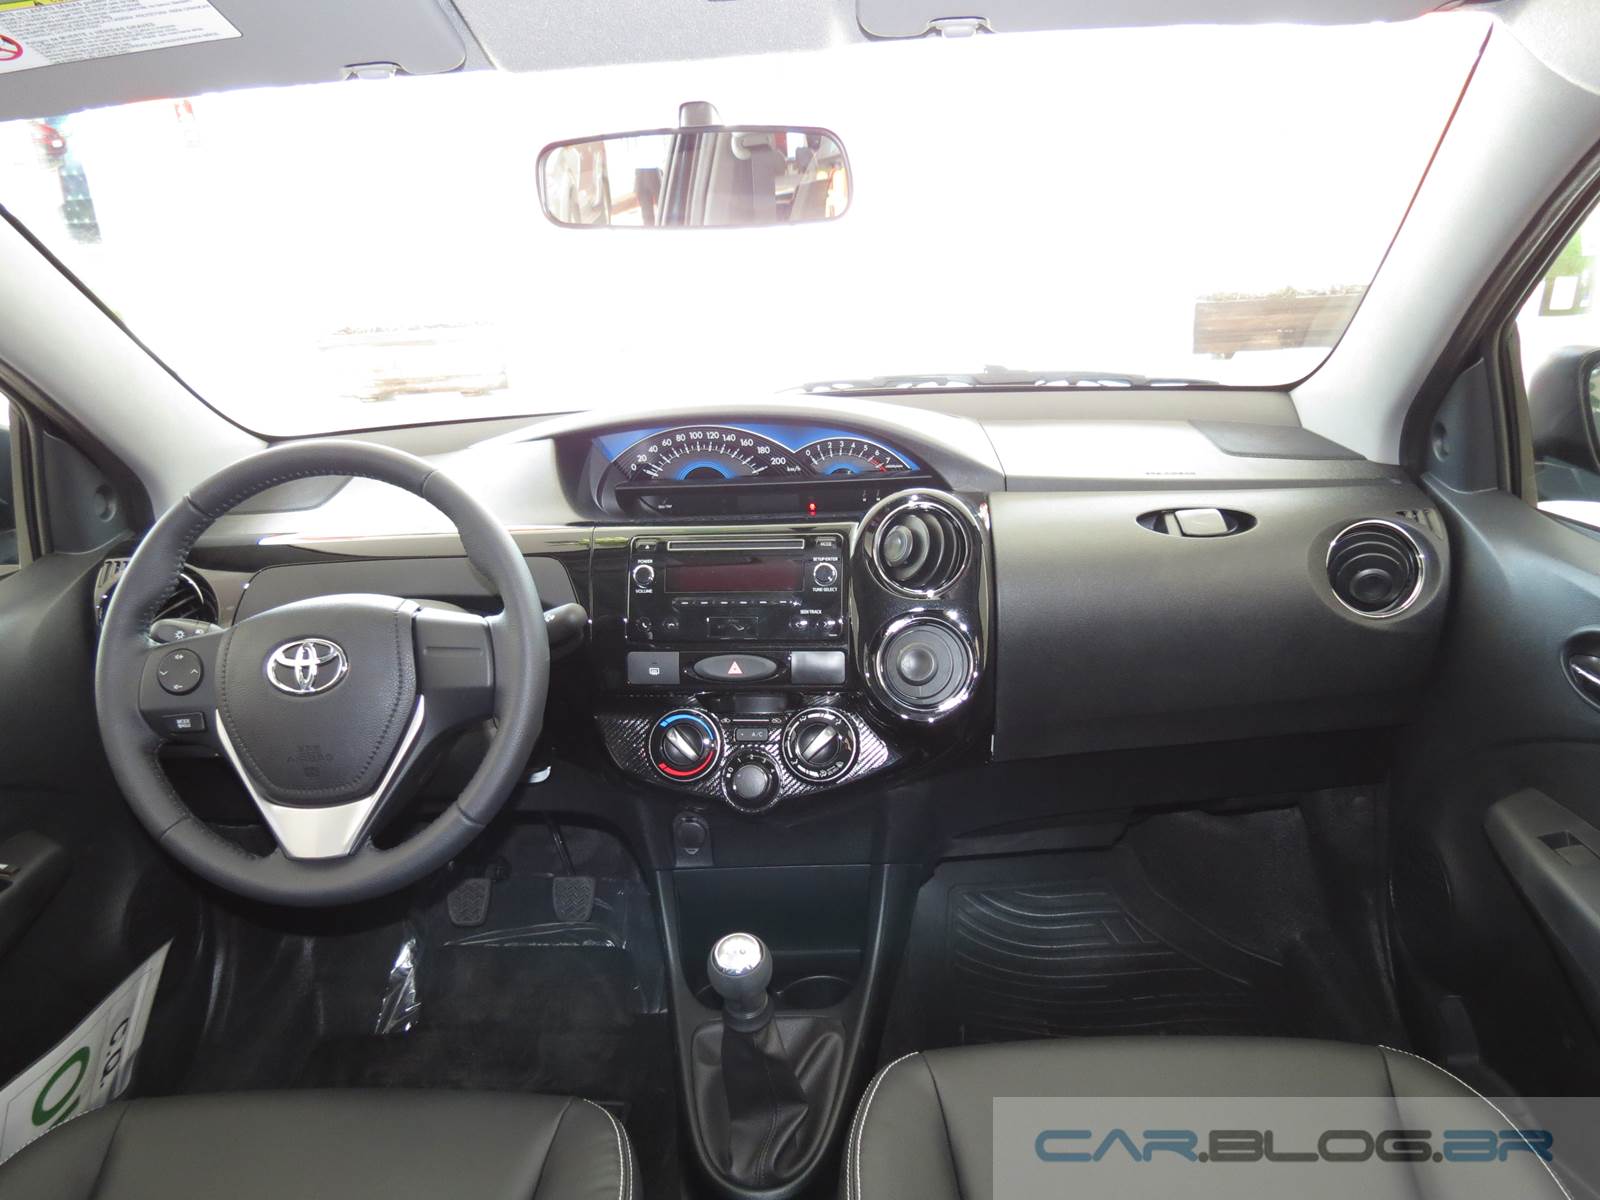 Toyota Etios XLS 2015 - interior - painel